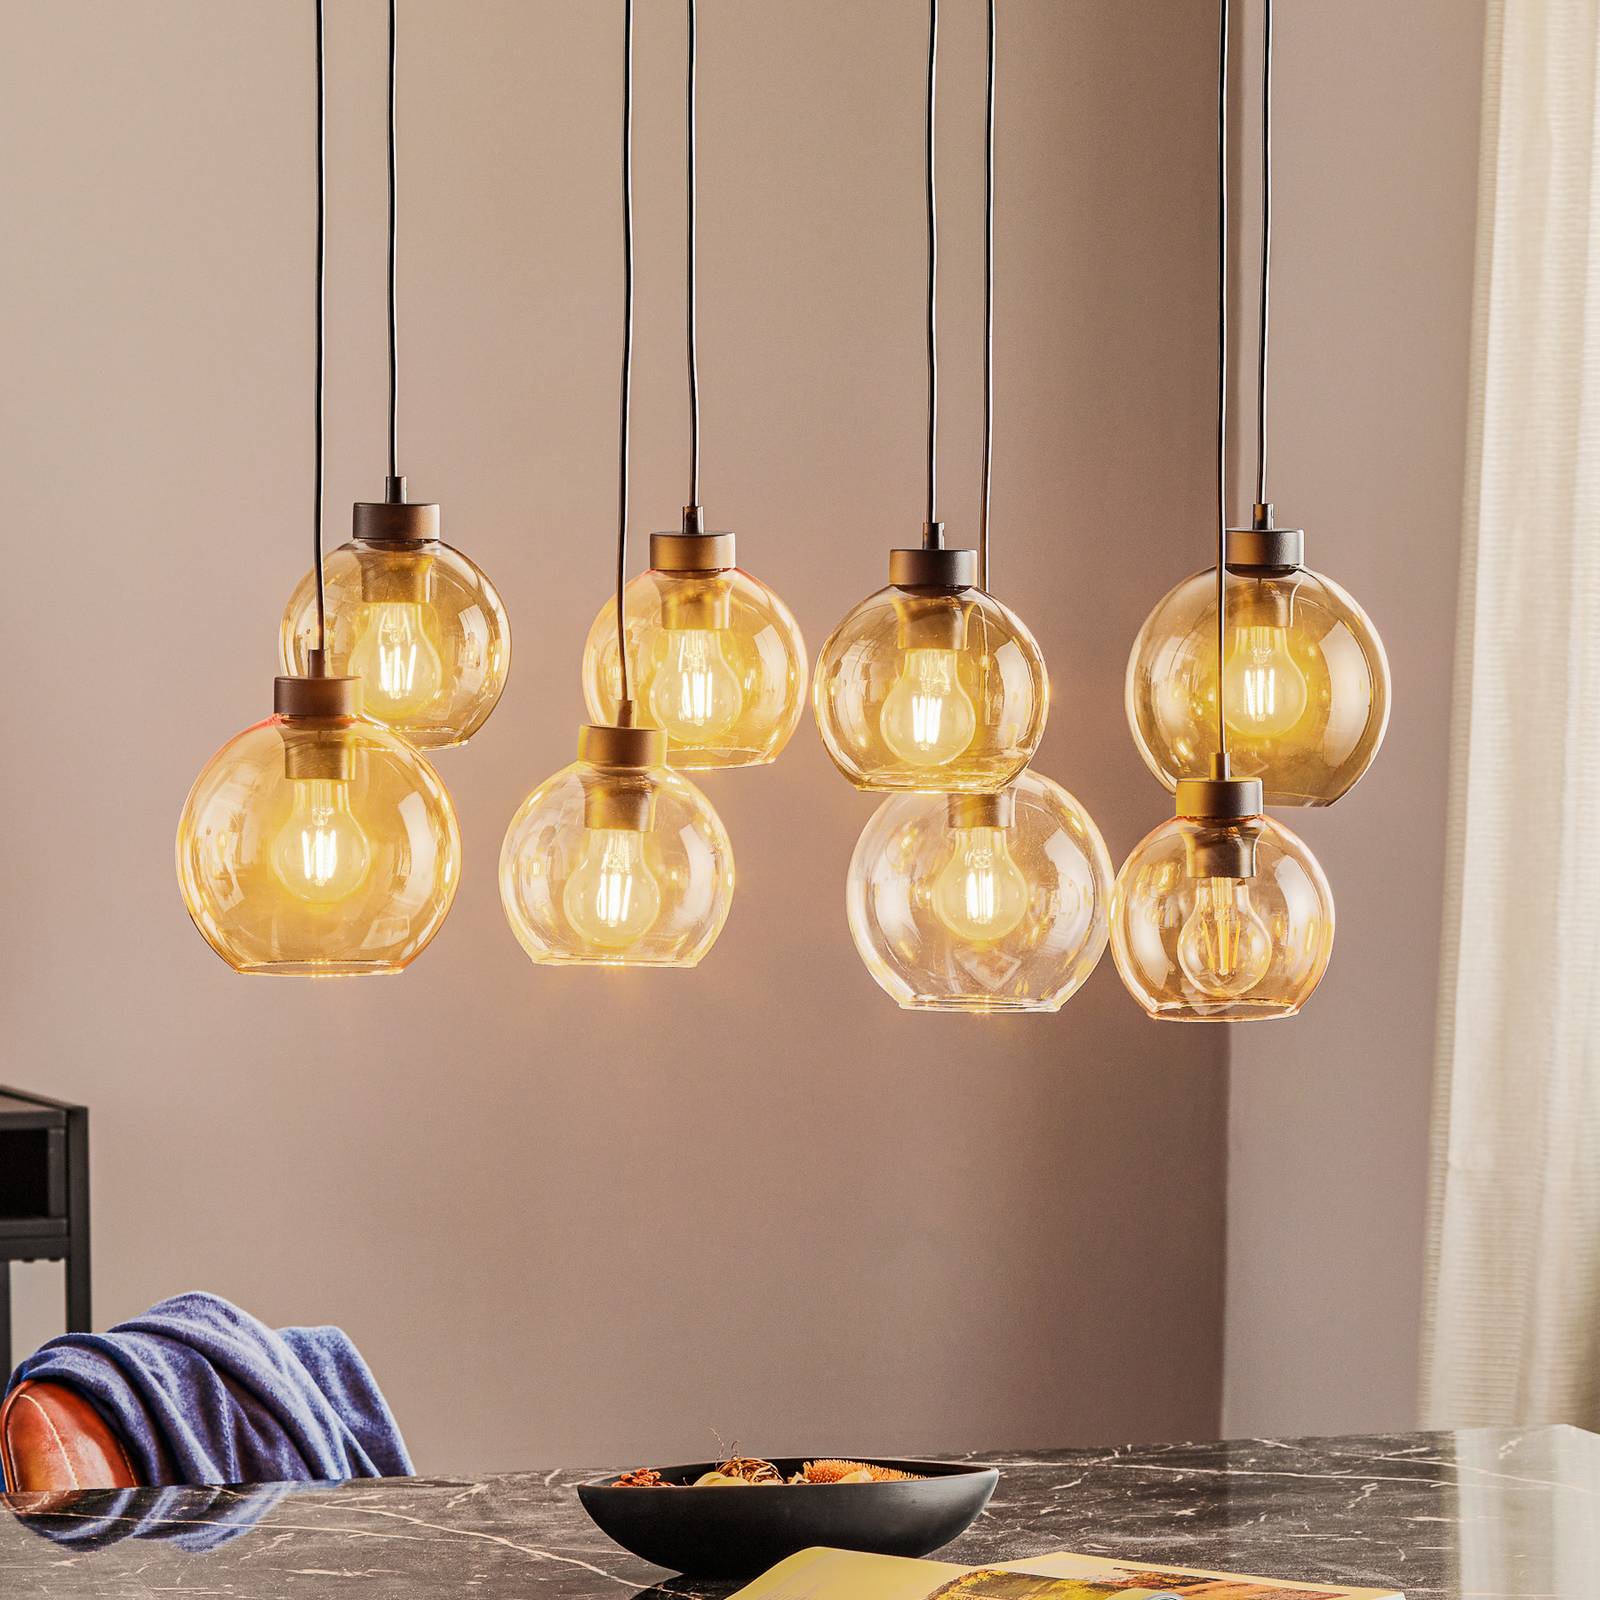 Hanglamp Cubus, 8-lamps, helder/honig/bruin